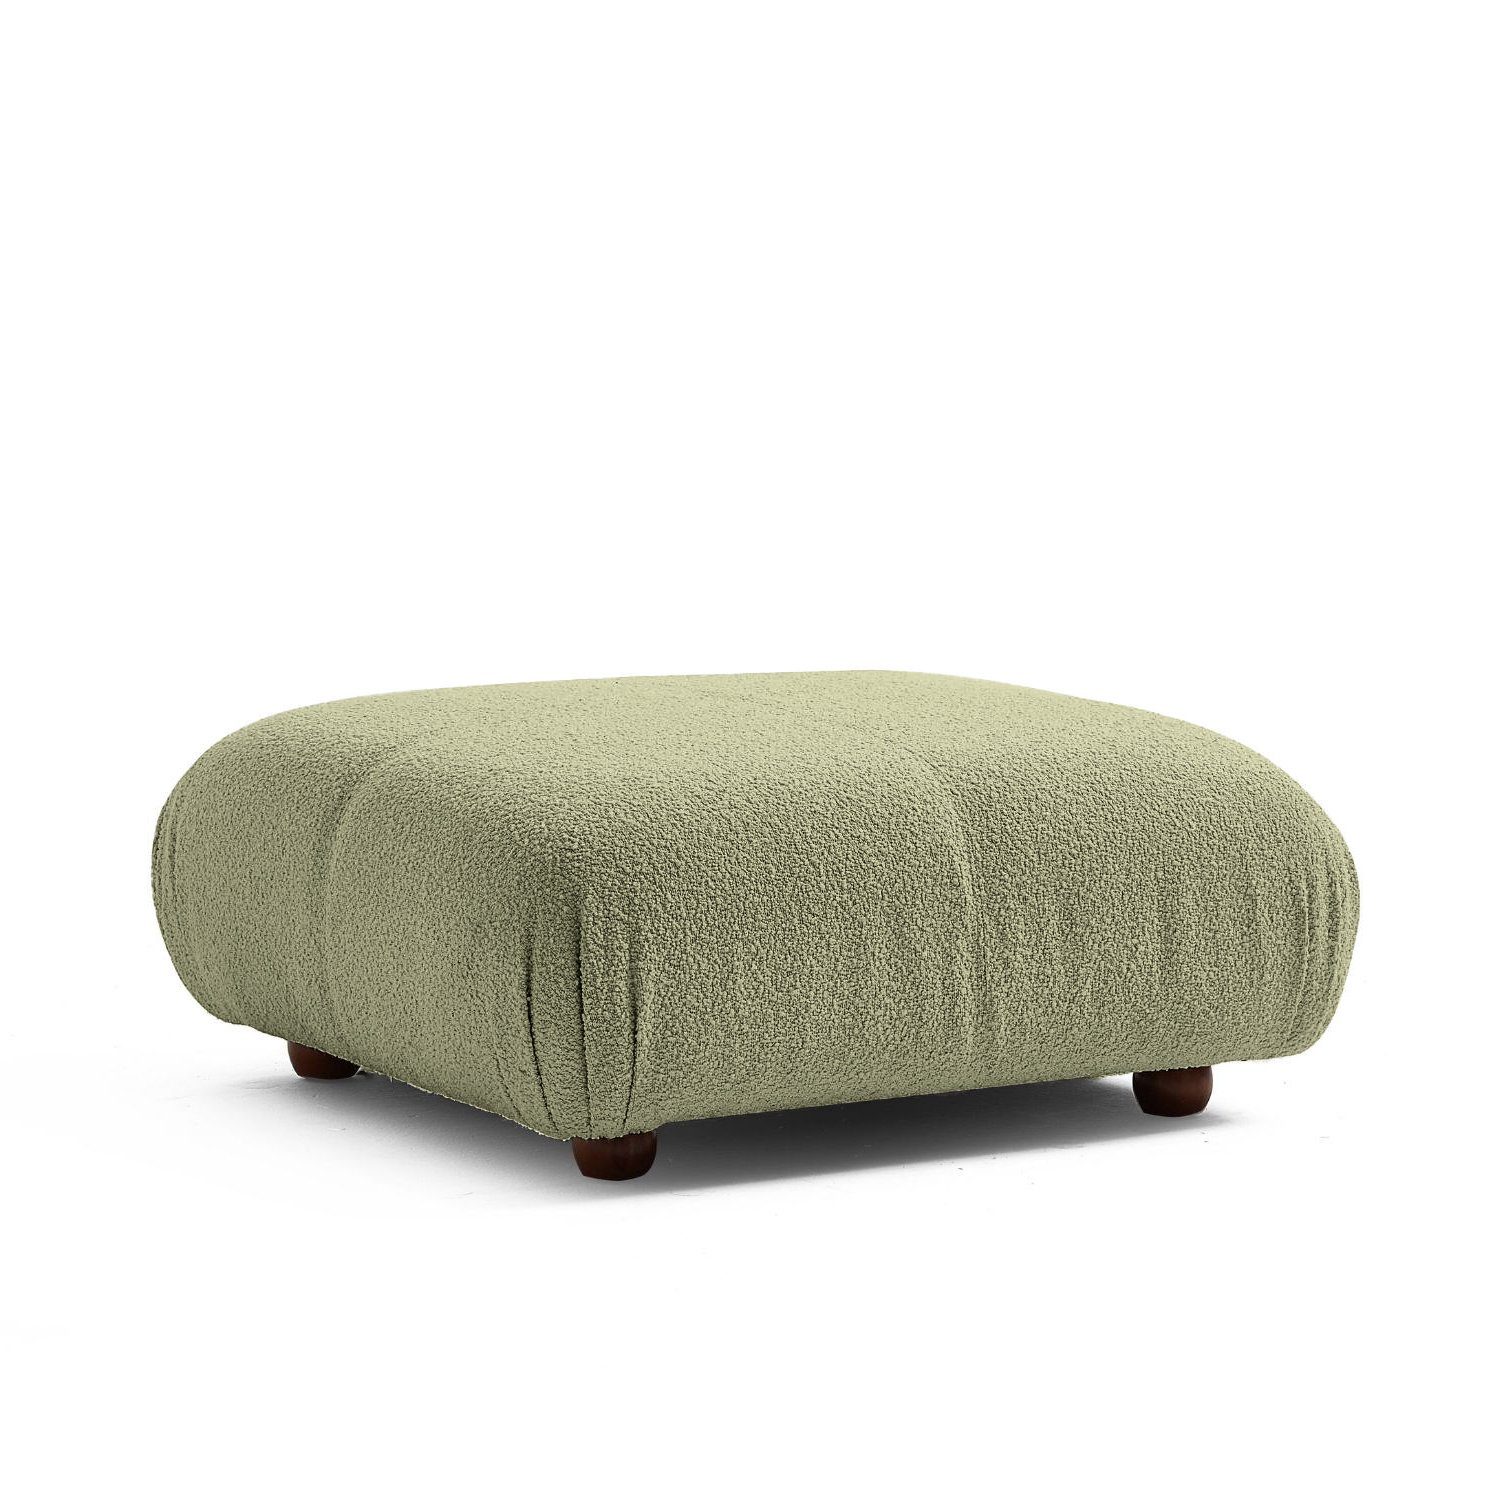 Touch me Sofa Knuffiges Sitzmöbel neueste Generation aus Komfortschaum Dunkelgrün-Lieferung und Aufbau im Preis enthalten!